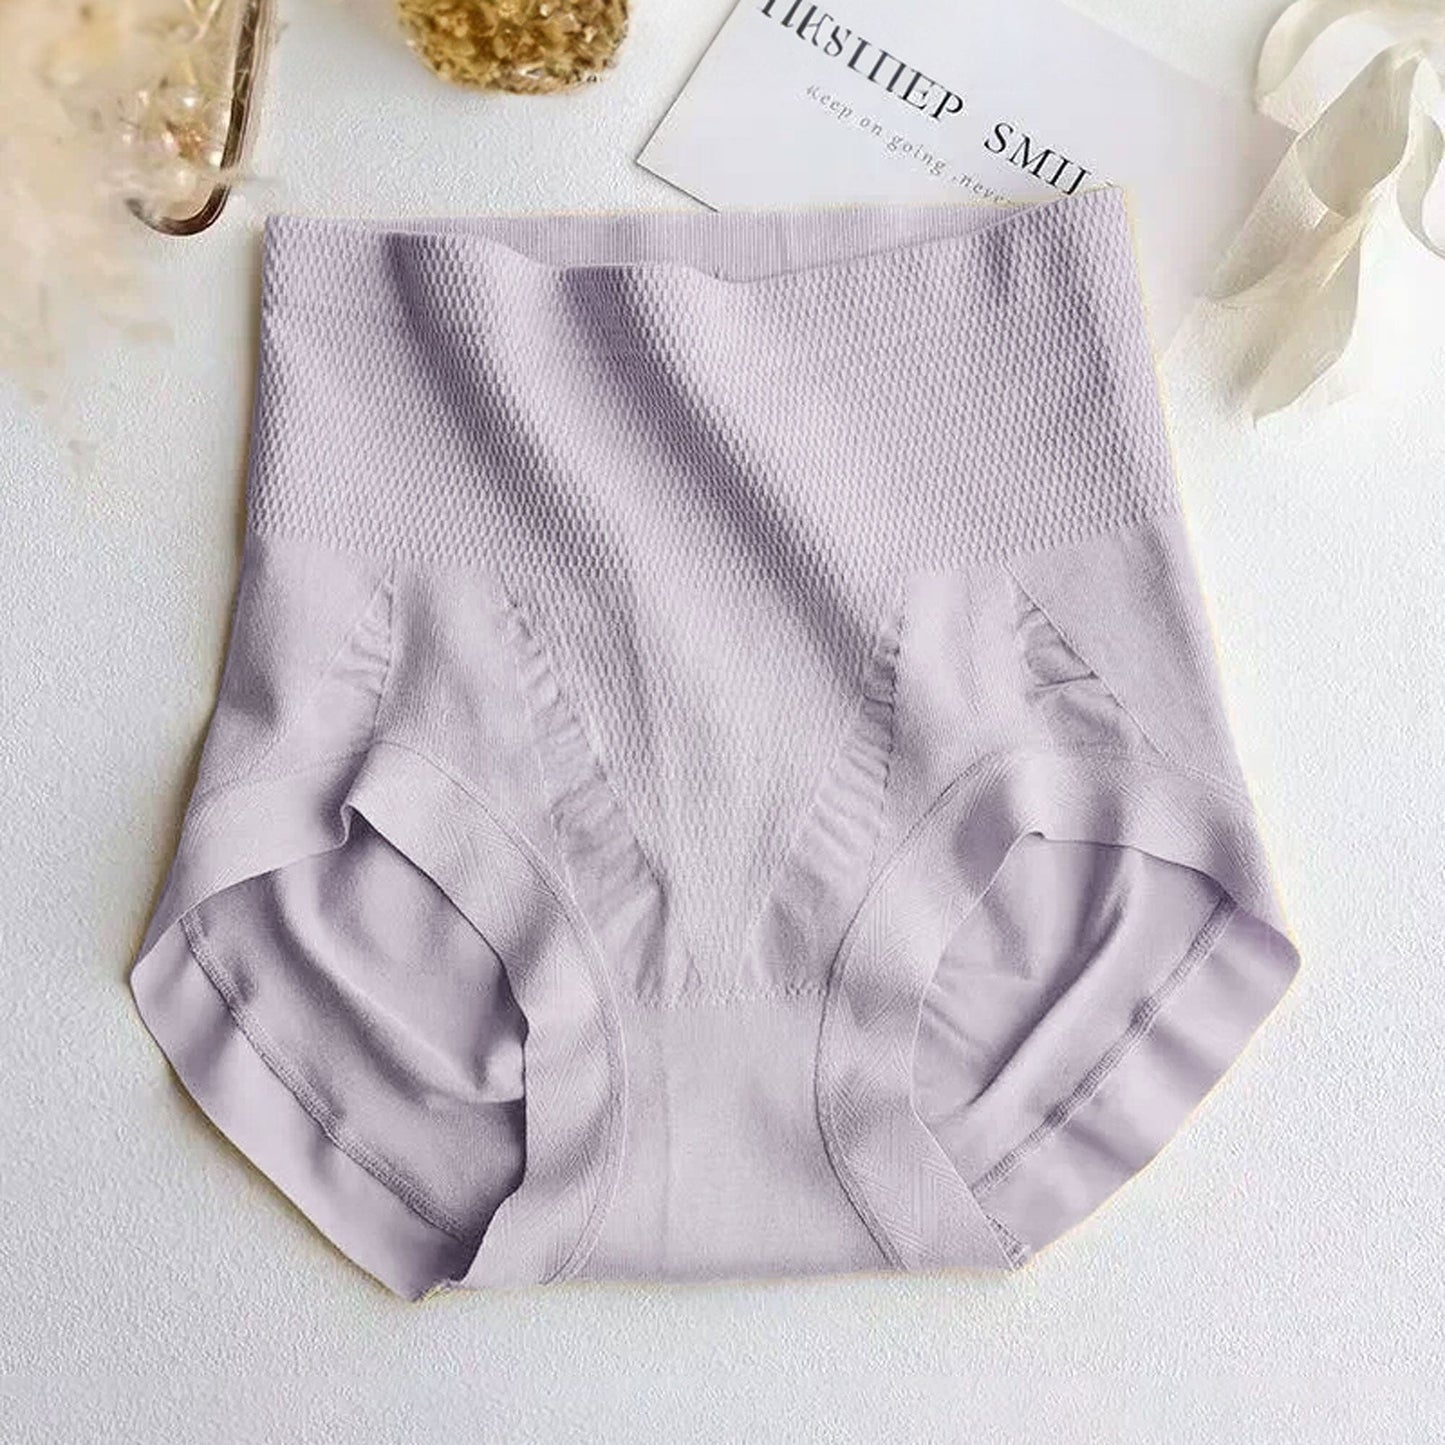 Women's Stretch Waist Tummy Shaper Underwear Women's Lingerie SRL Light Purple 30-32 